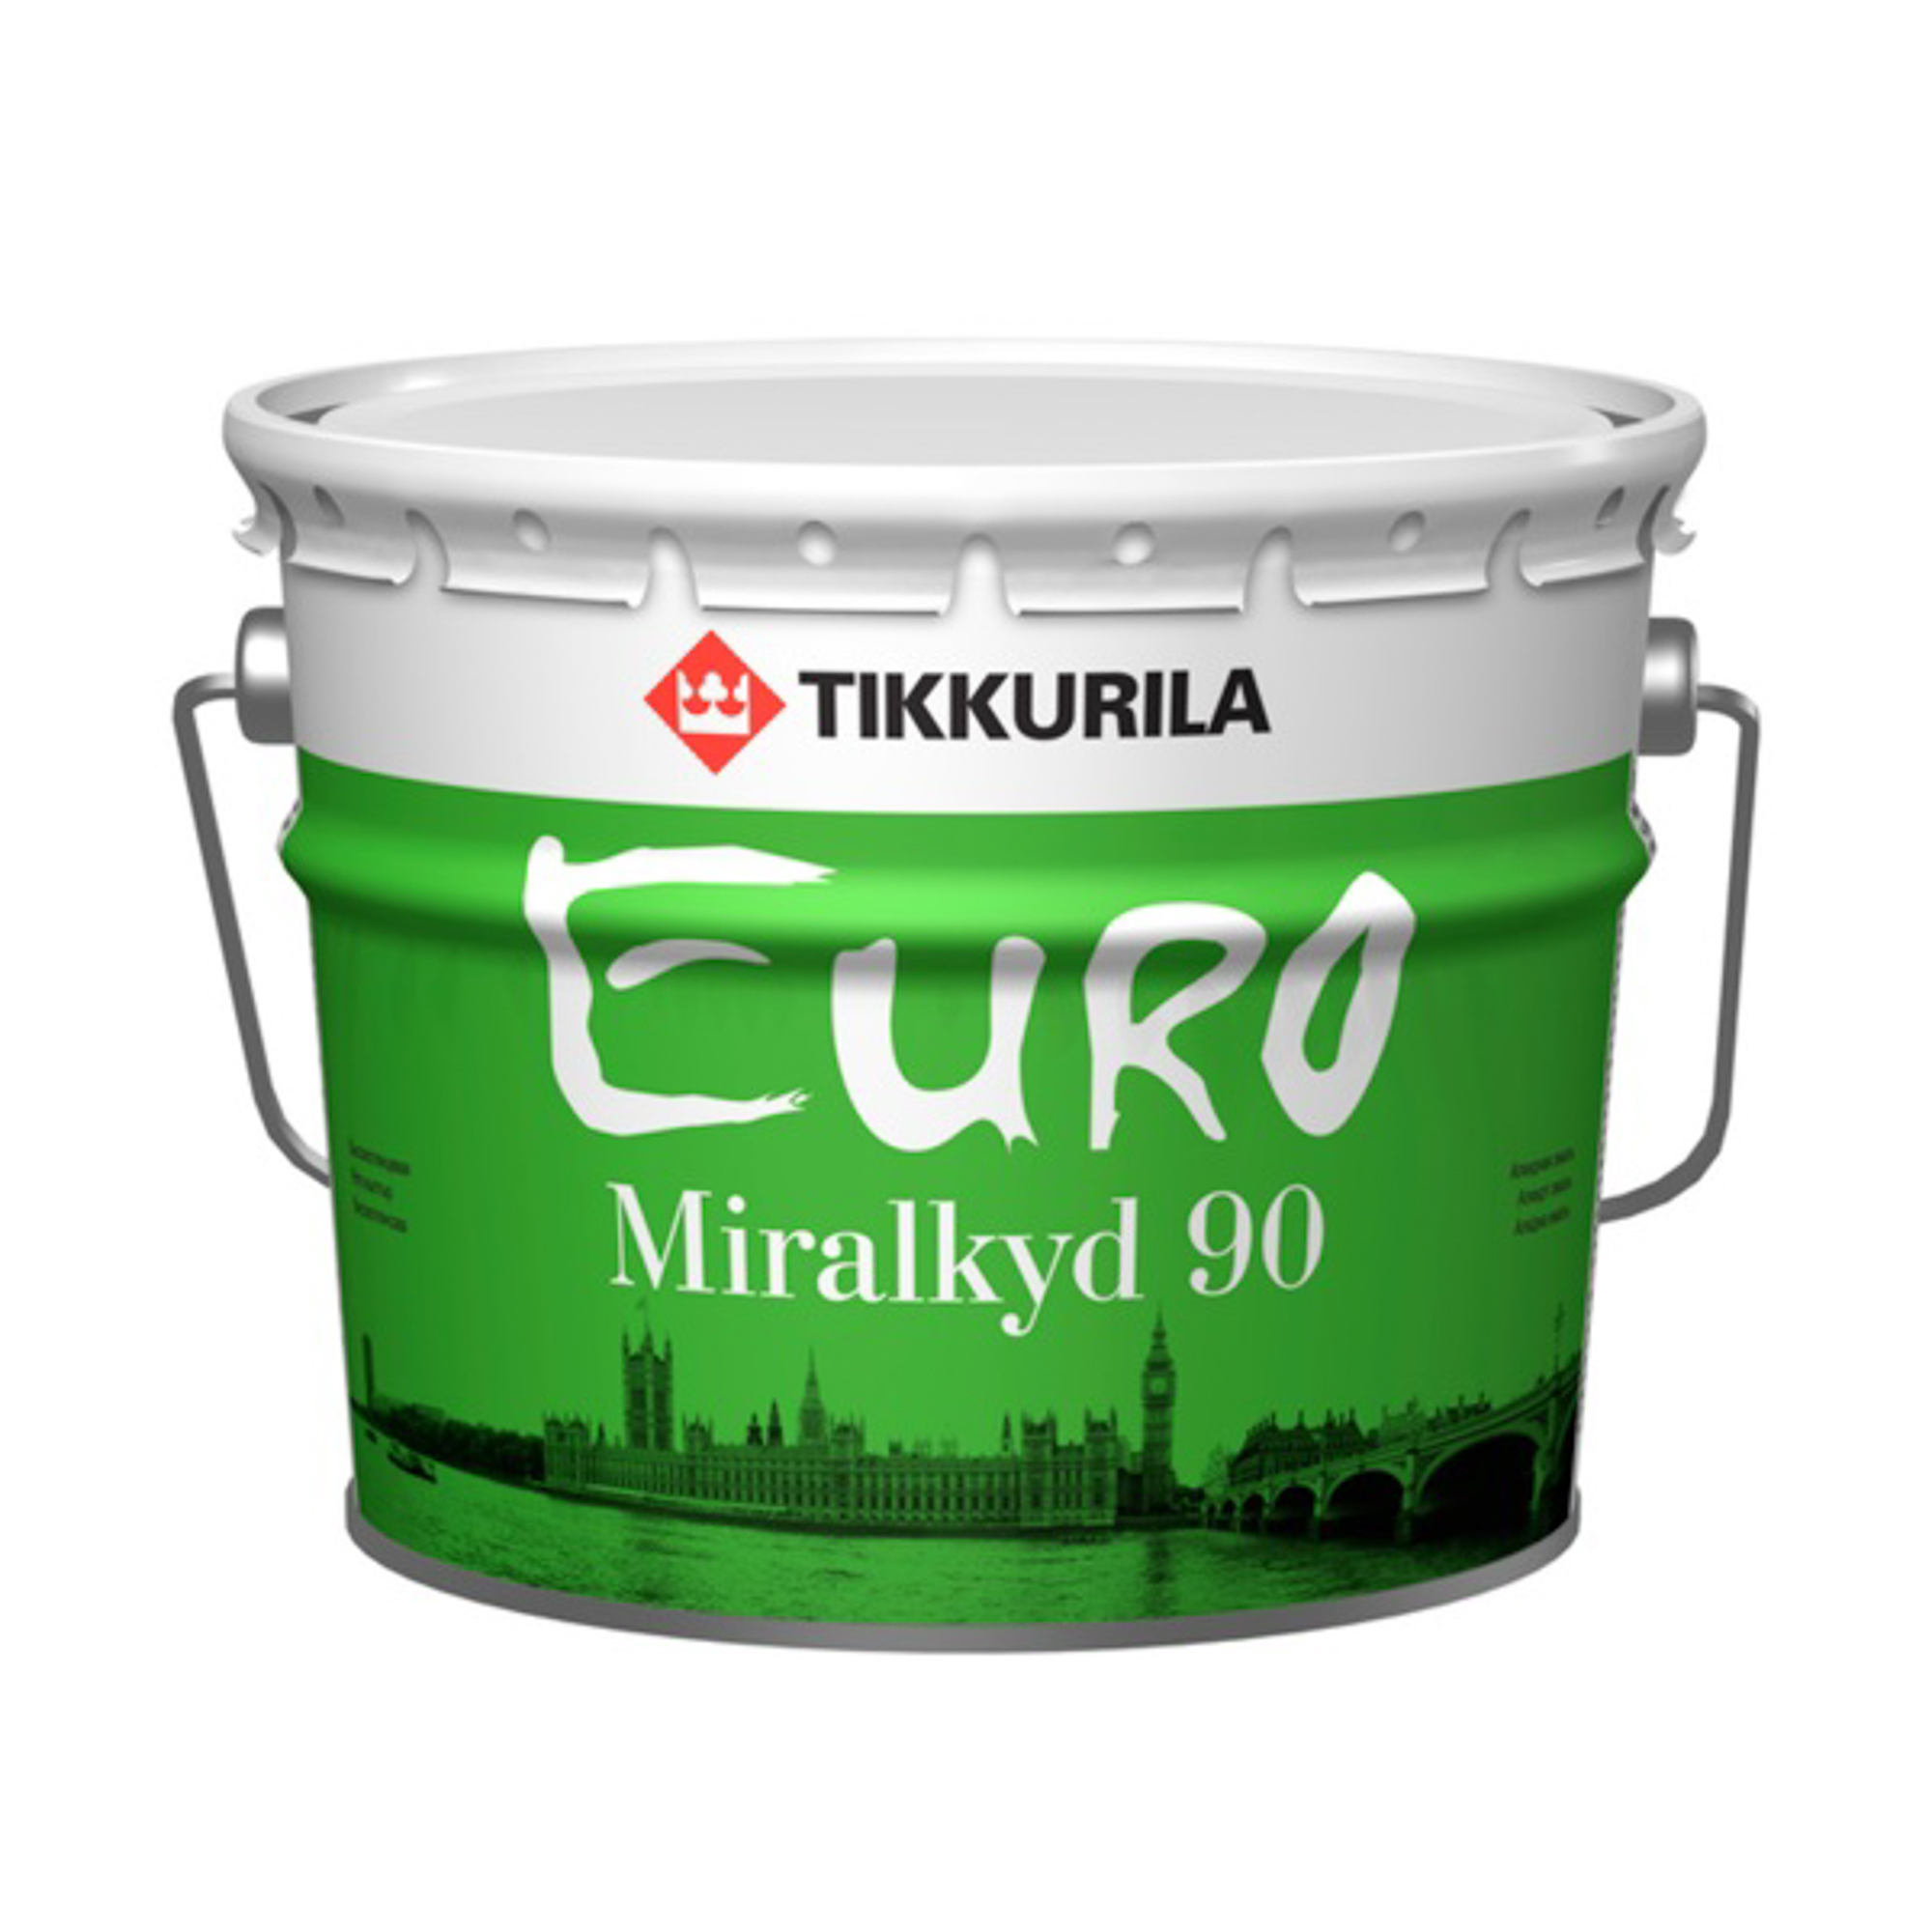 фото Эмаль алкидная высокоглянцевая tikkurila euro miralkyd 90 база с 9л тиккурила ойл